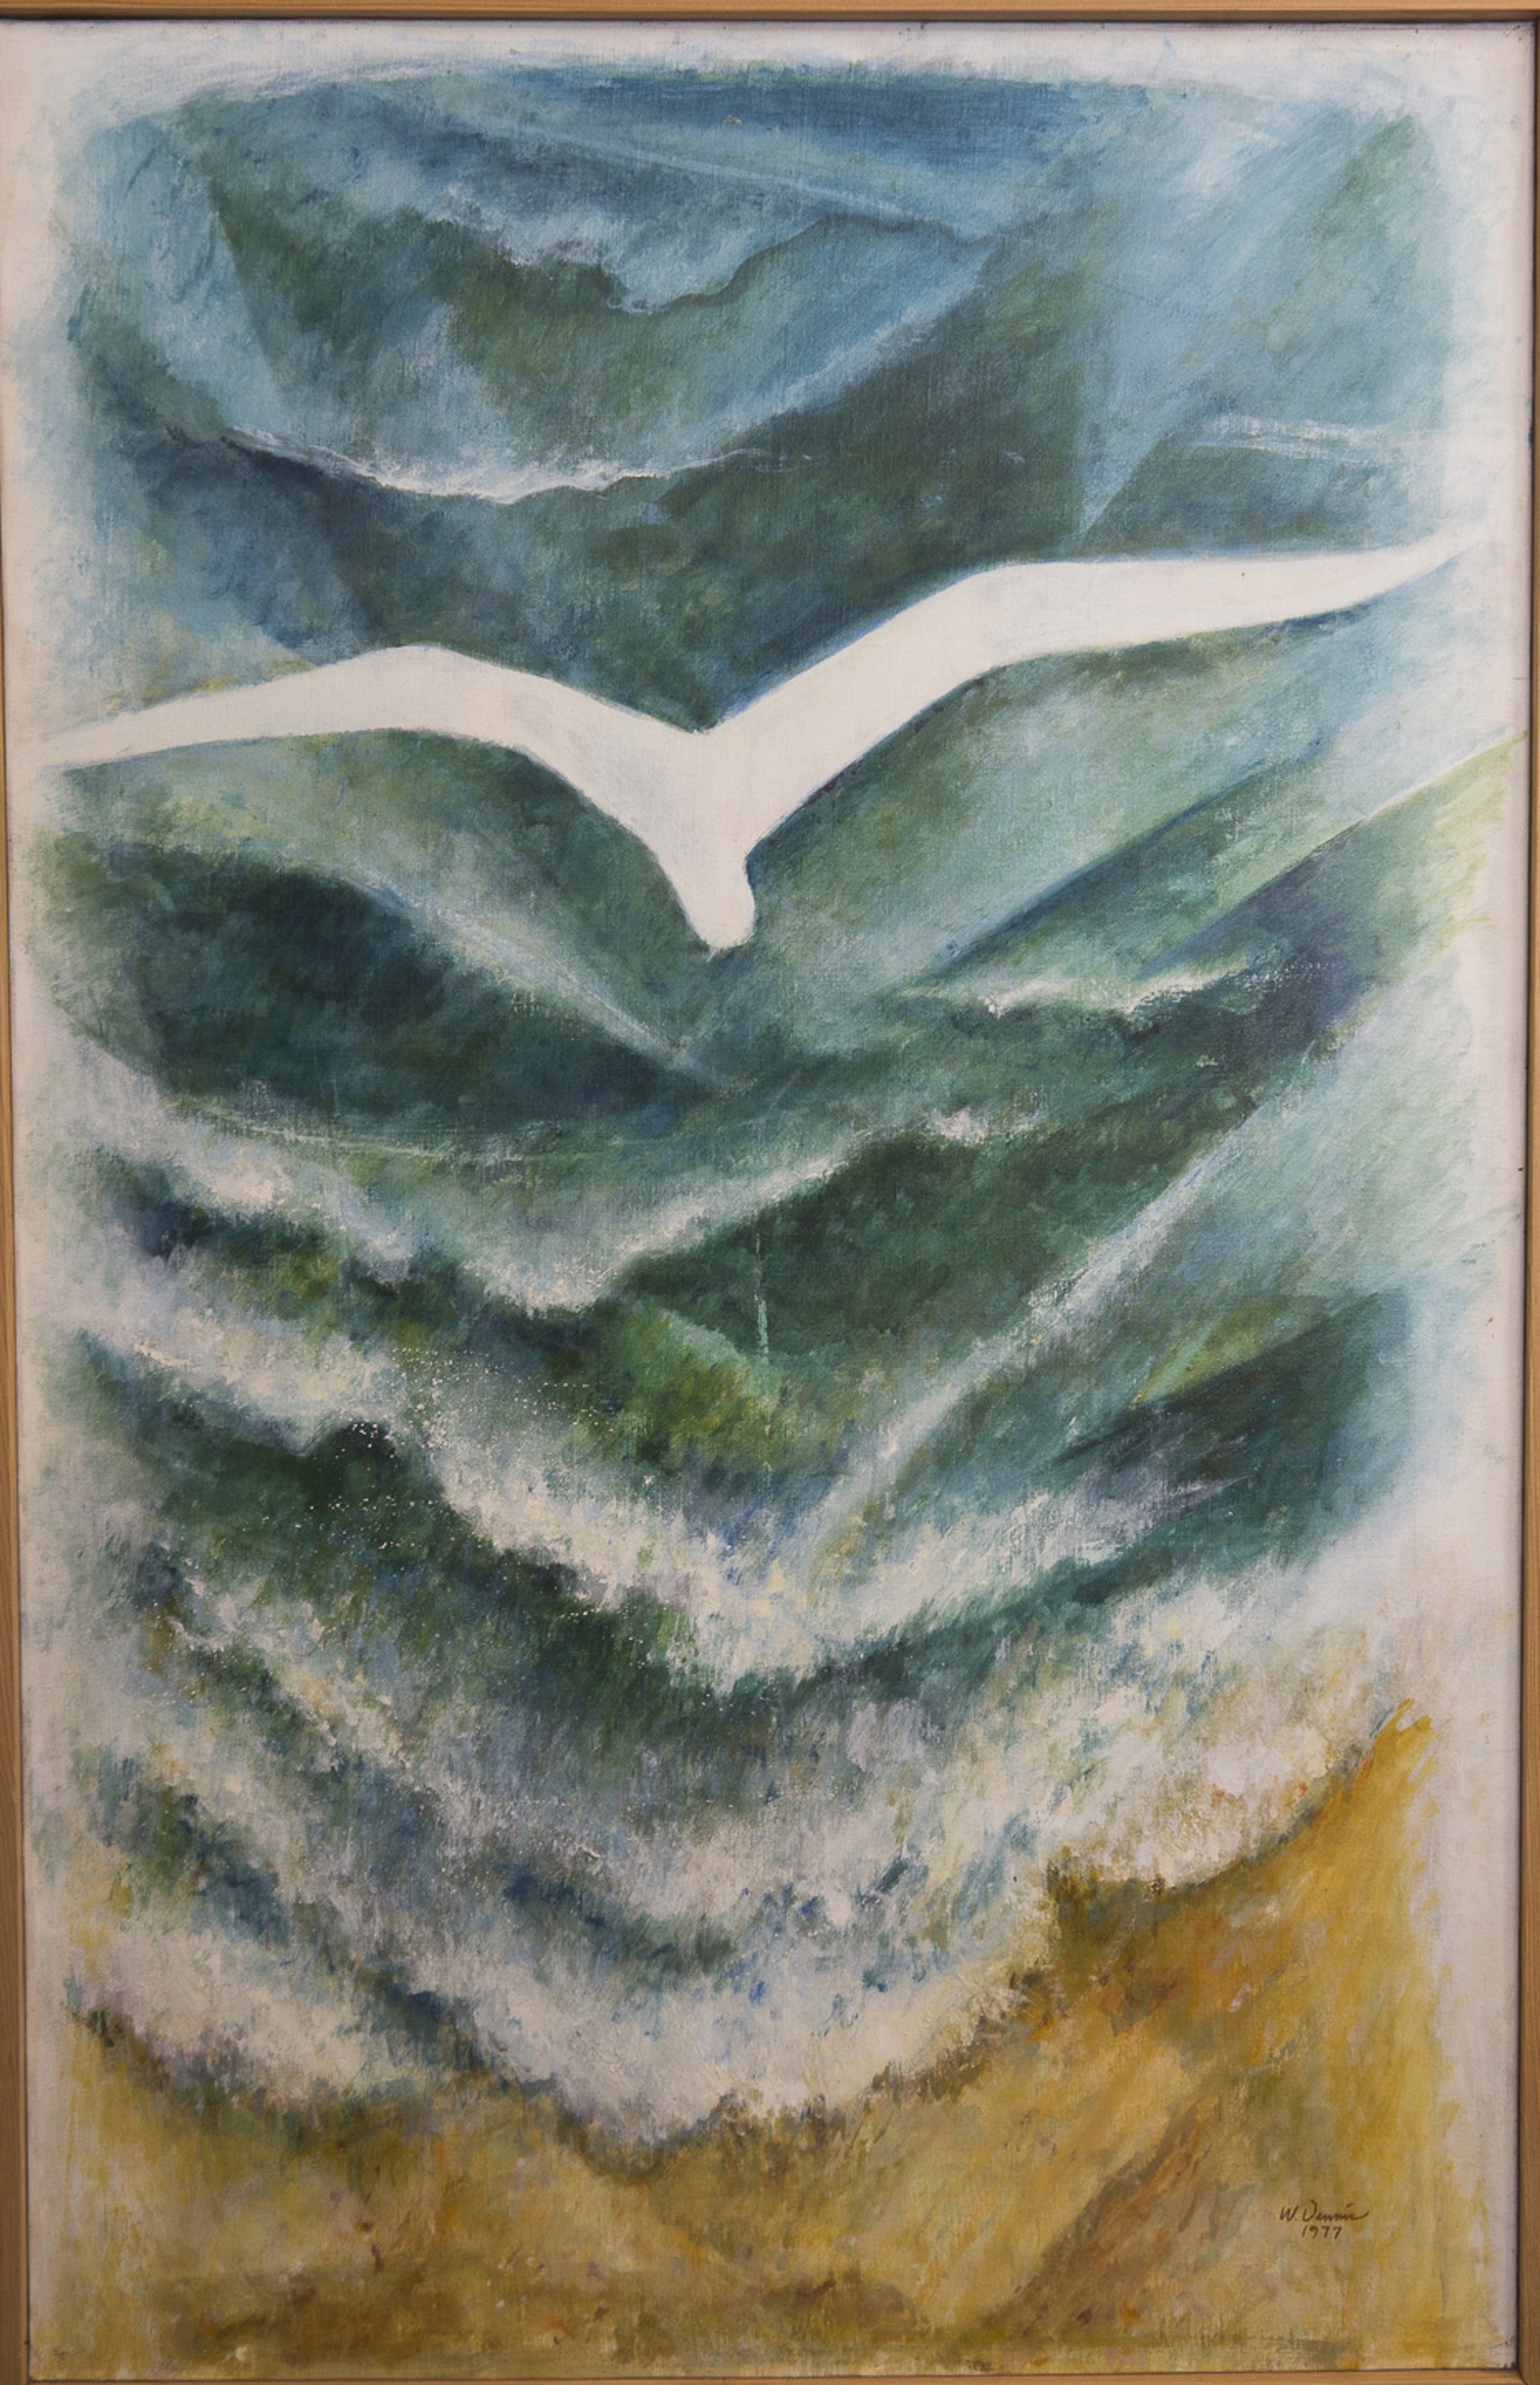 Sea Bird by Warren Dennis